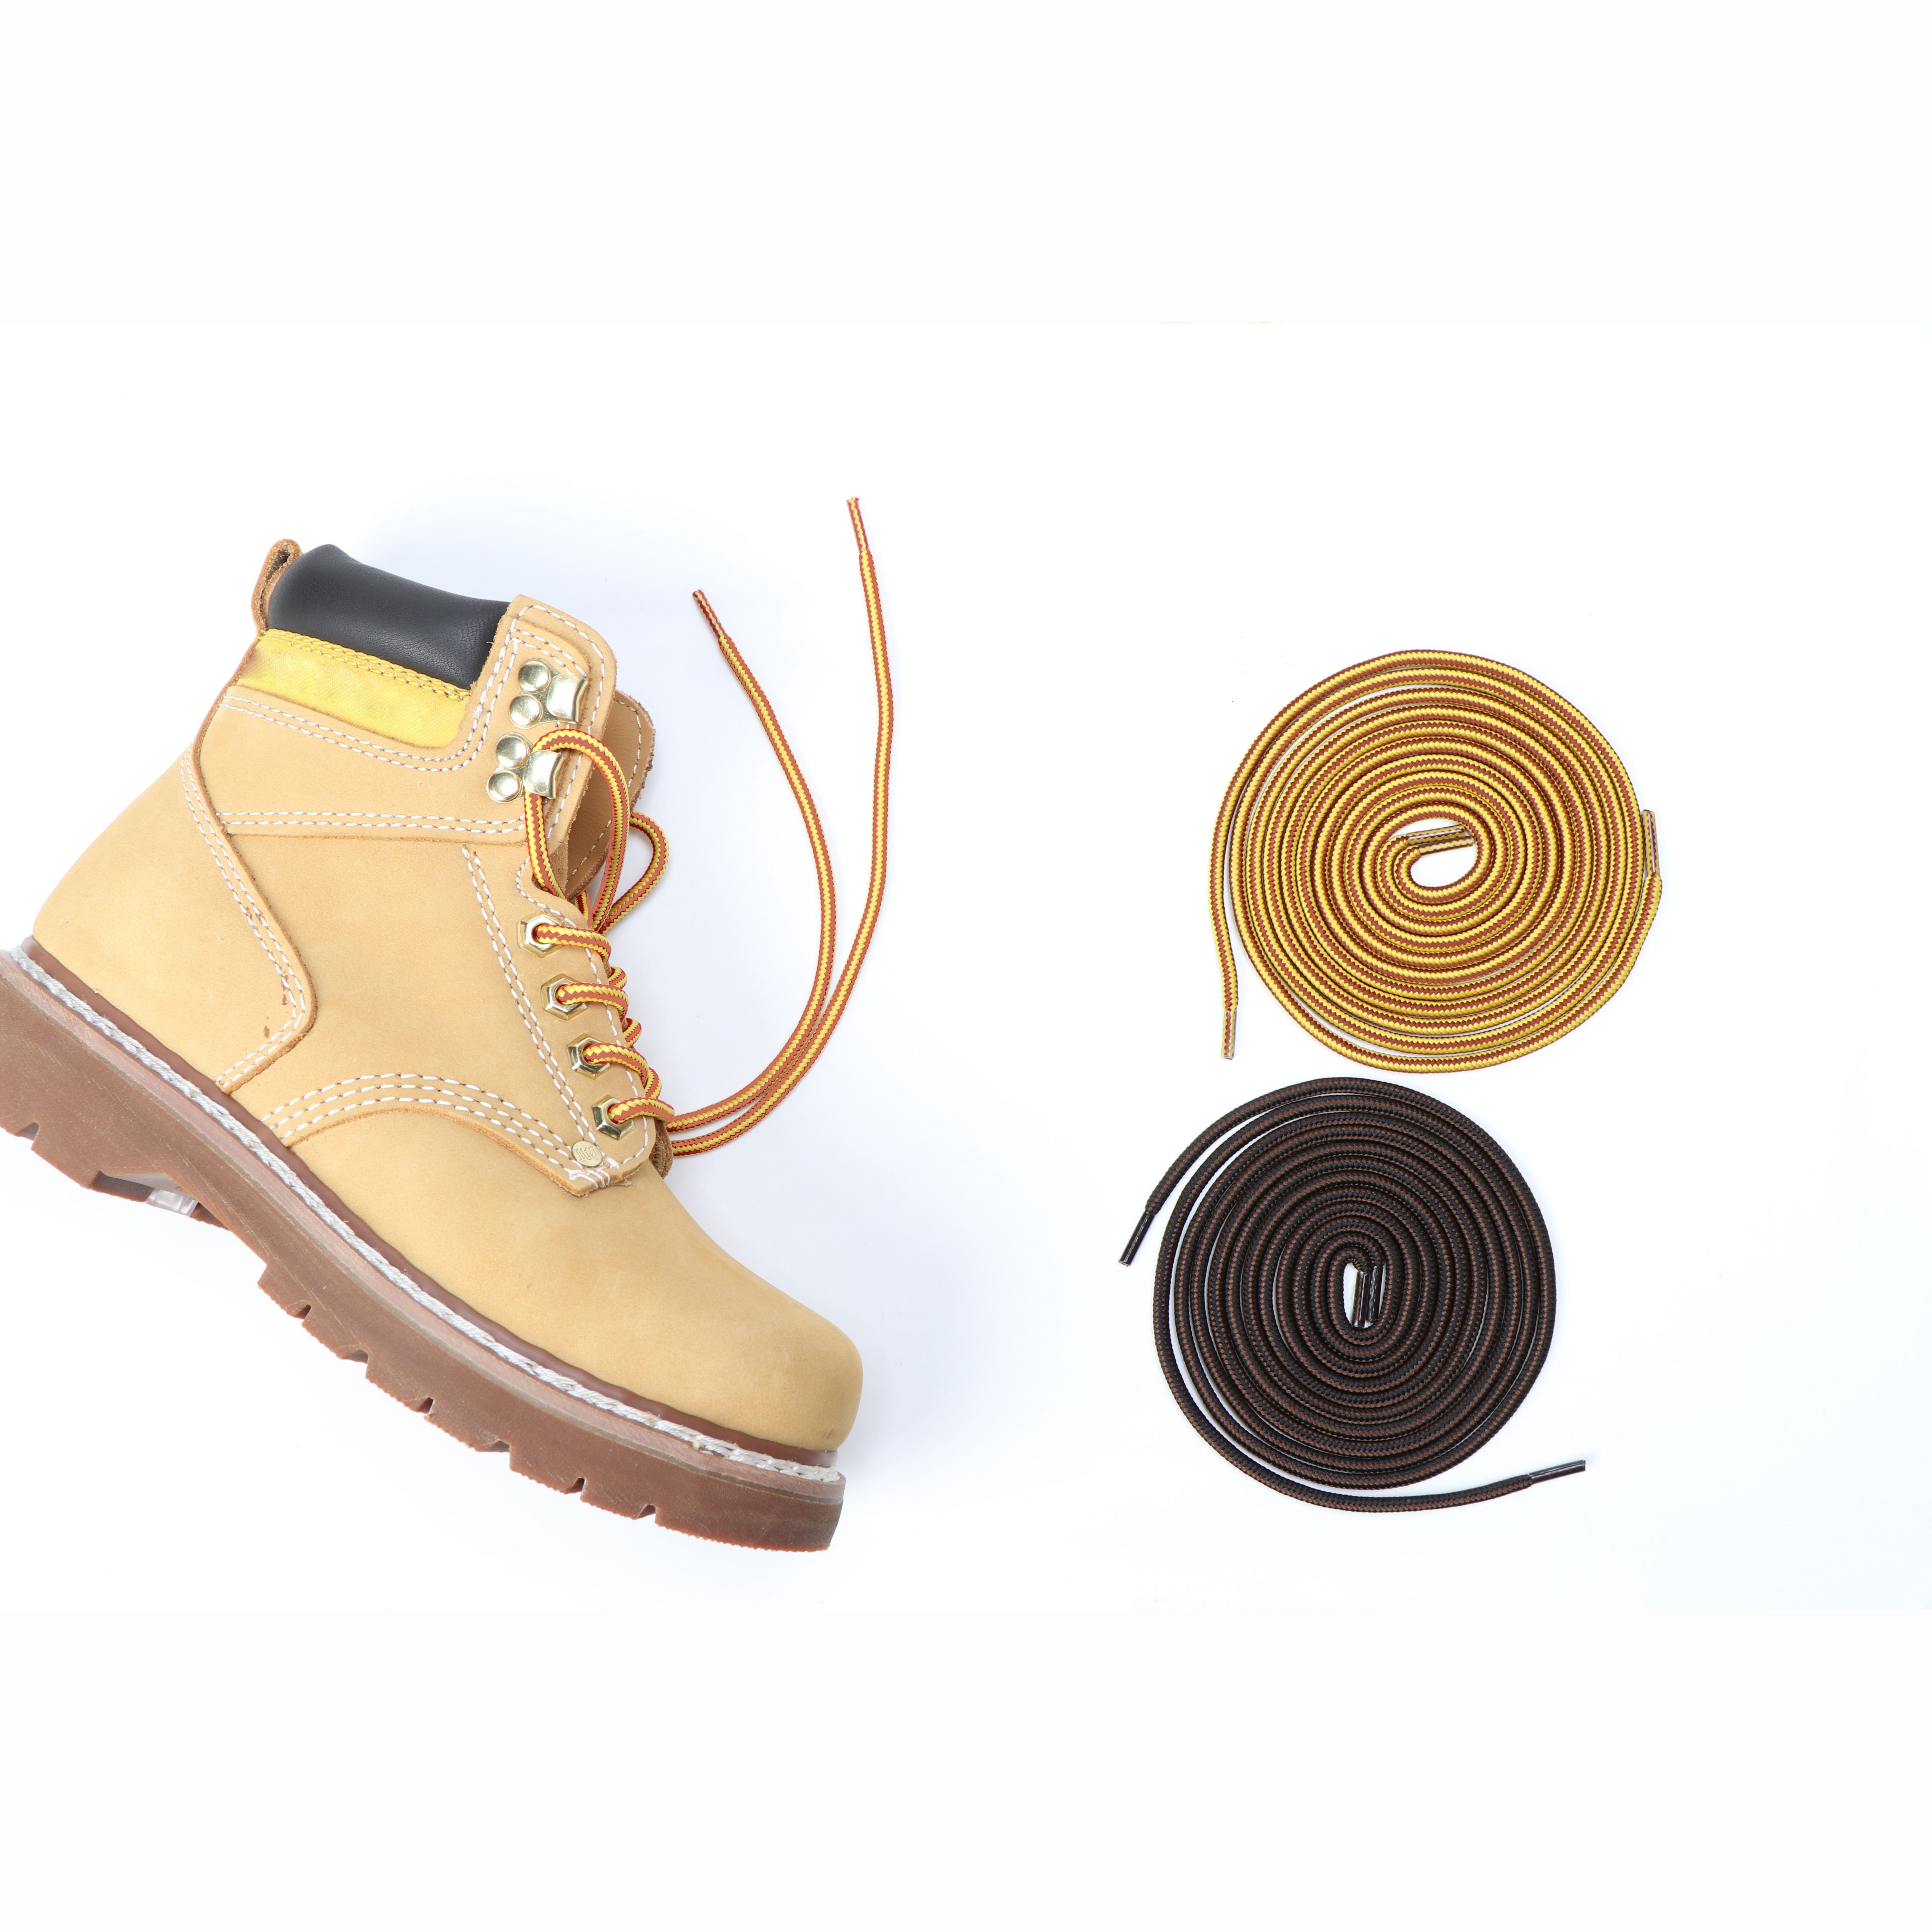 Cordones de repuesto para bota de 119 cm / 47 in en marrón